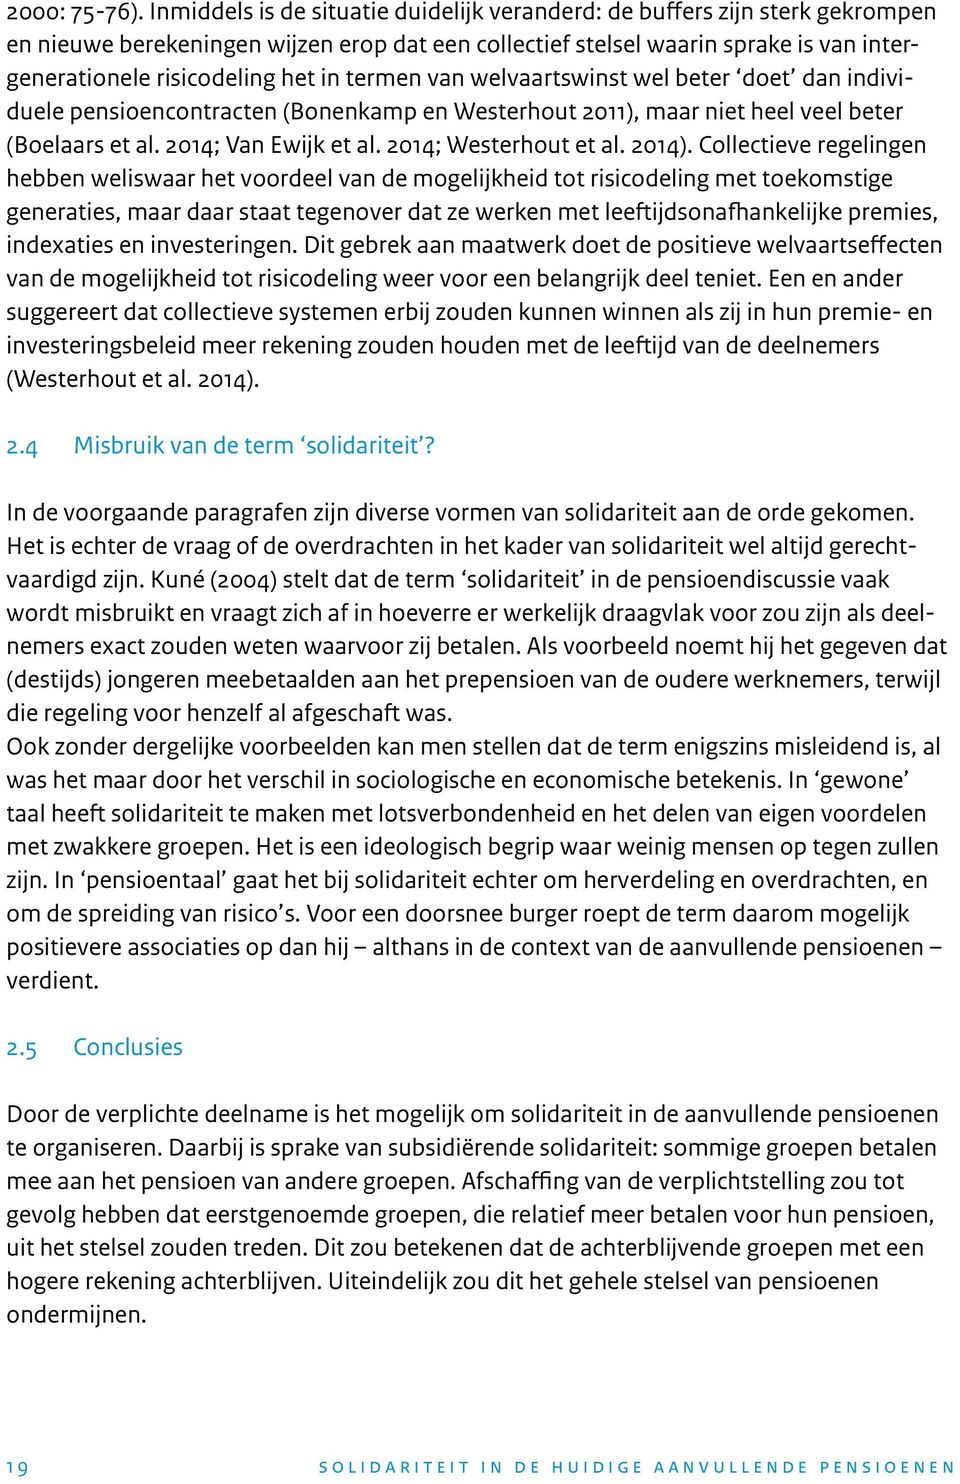 termen van welvaartswinst wel beter doet dan individuele pensioencontracten (Bonenkamp en Westerhout 2011), maar niet heel veel beter (Boelaars et al. 2014; Van Ewijk et al. 2014; Westerhout et al.